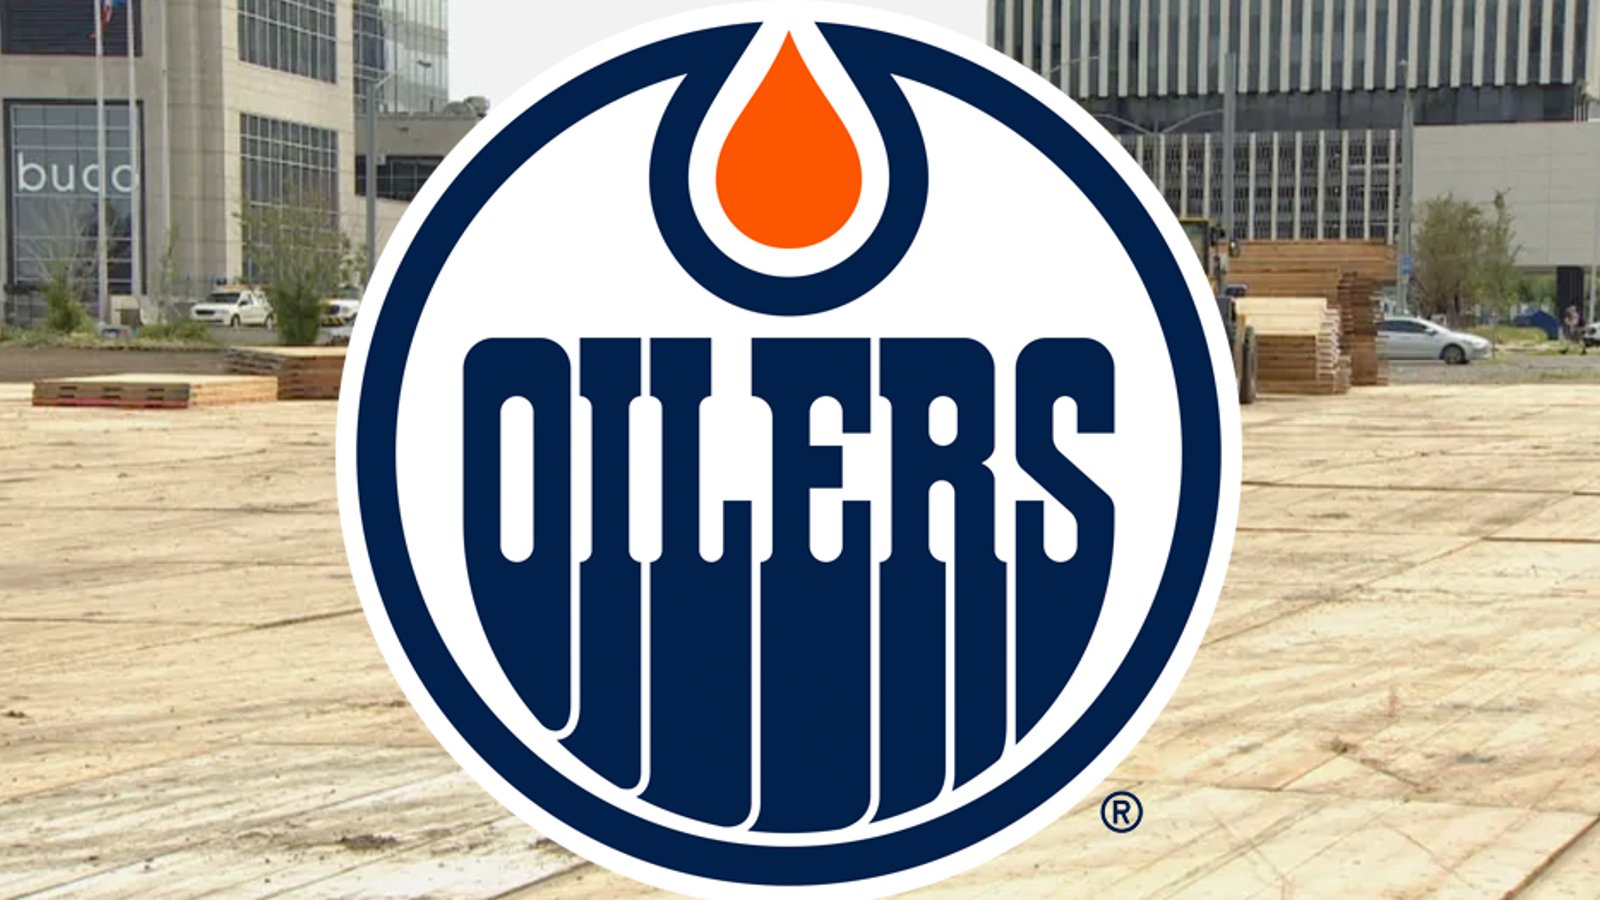 Oilers planning drive-in beer garden for downtown Edmonton